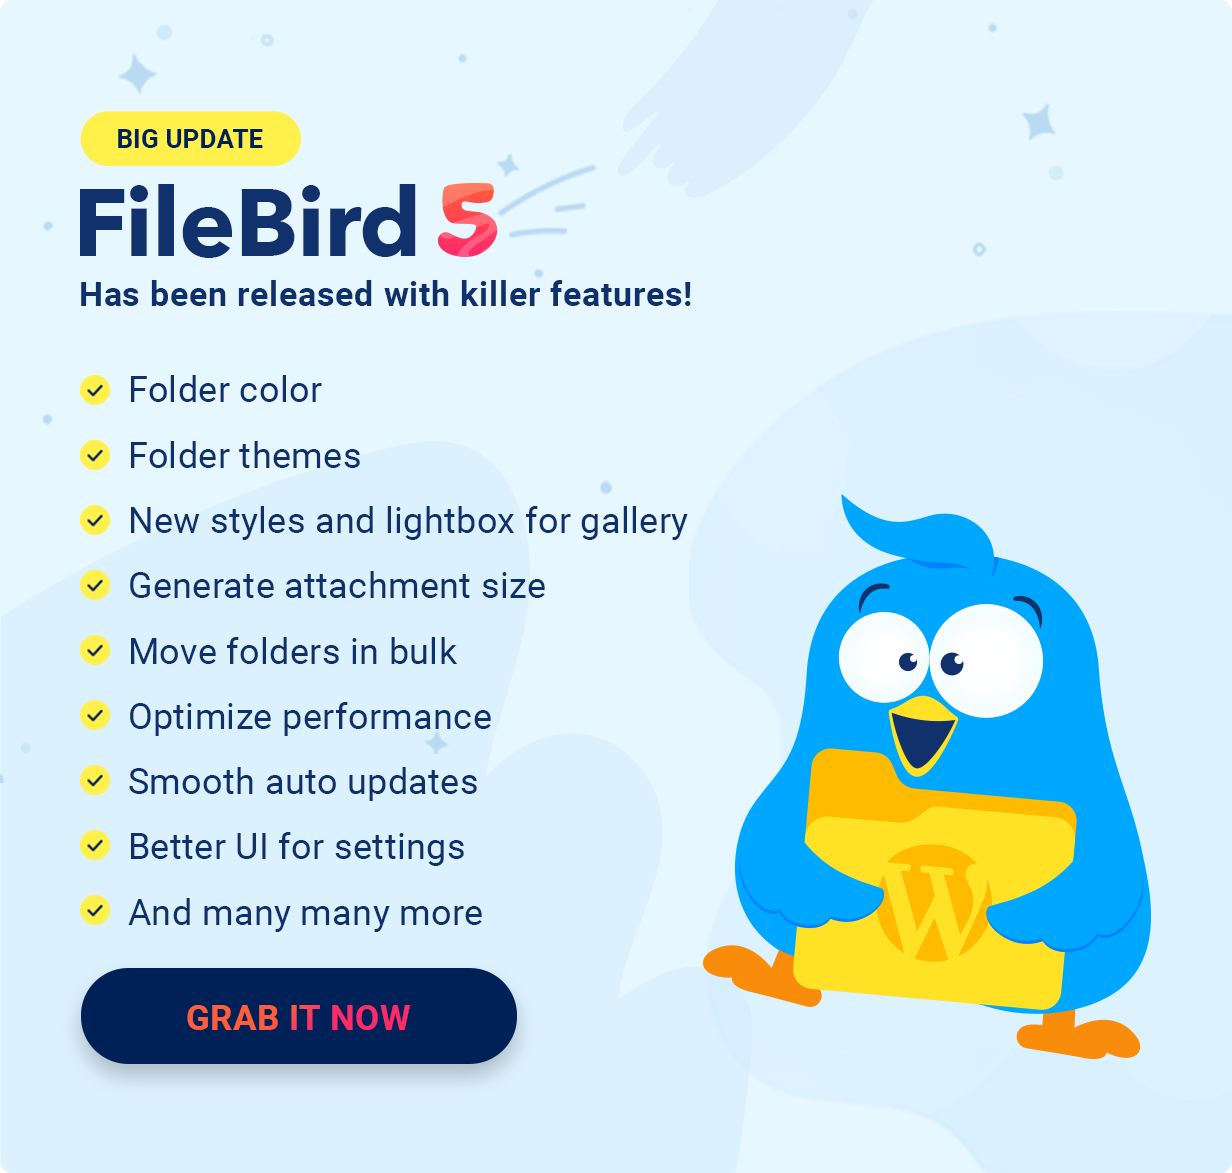 FileBird 5 - Big Update